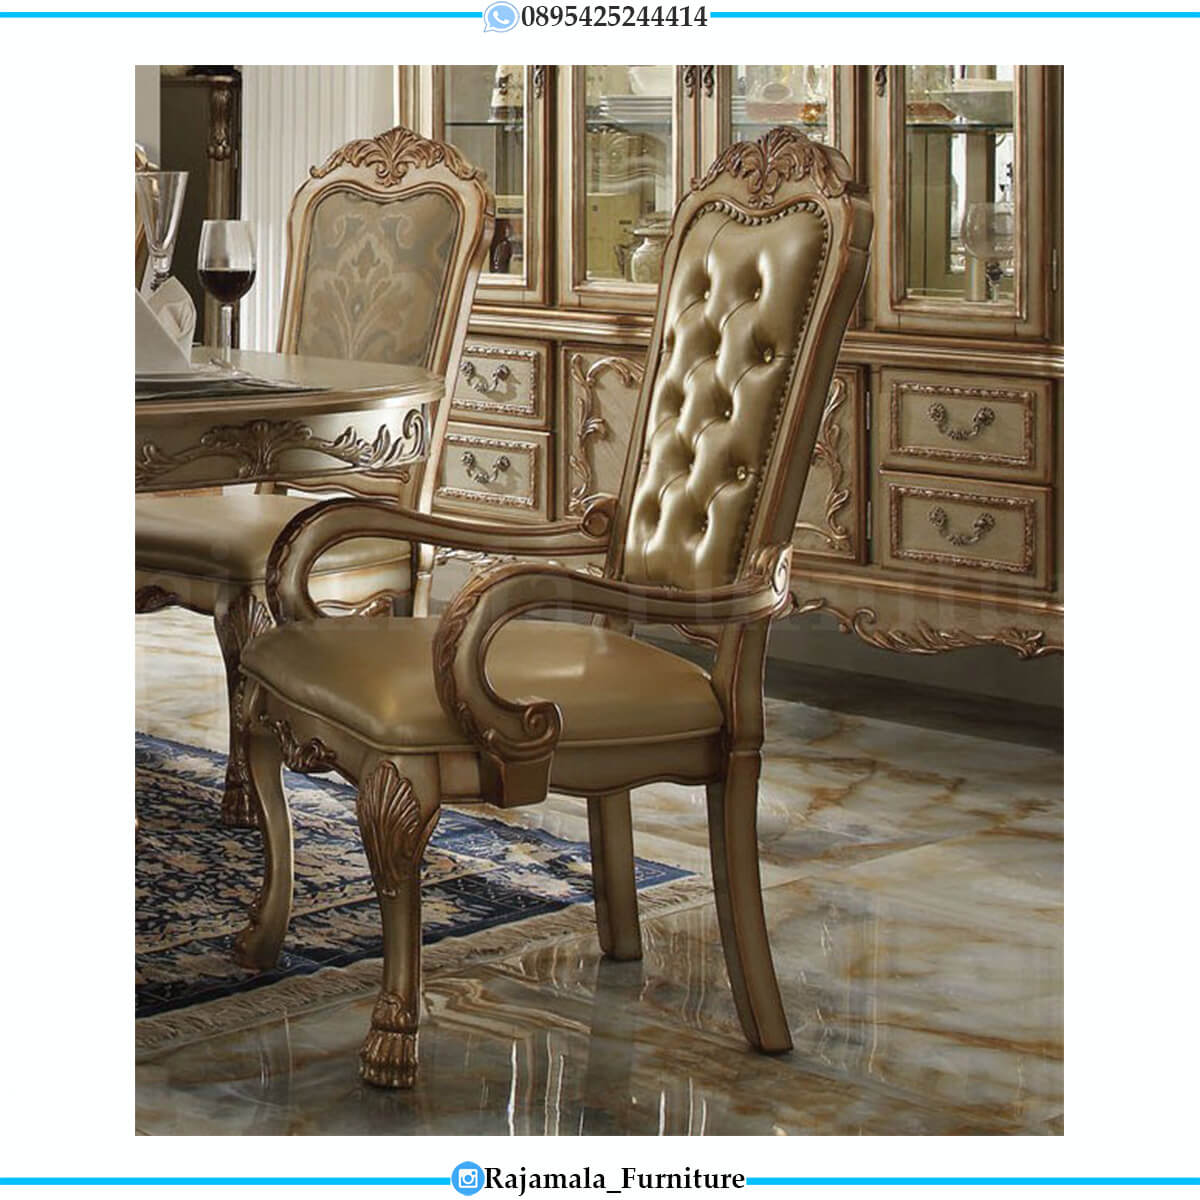 Jual Meja Makan Mewah Ukir Jepara Luxury Carving Italian Design Golden Color RM-0600